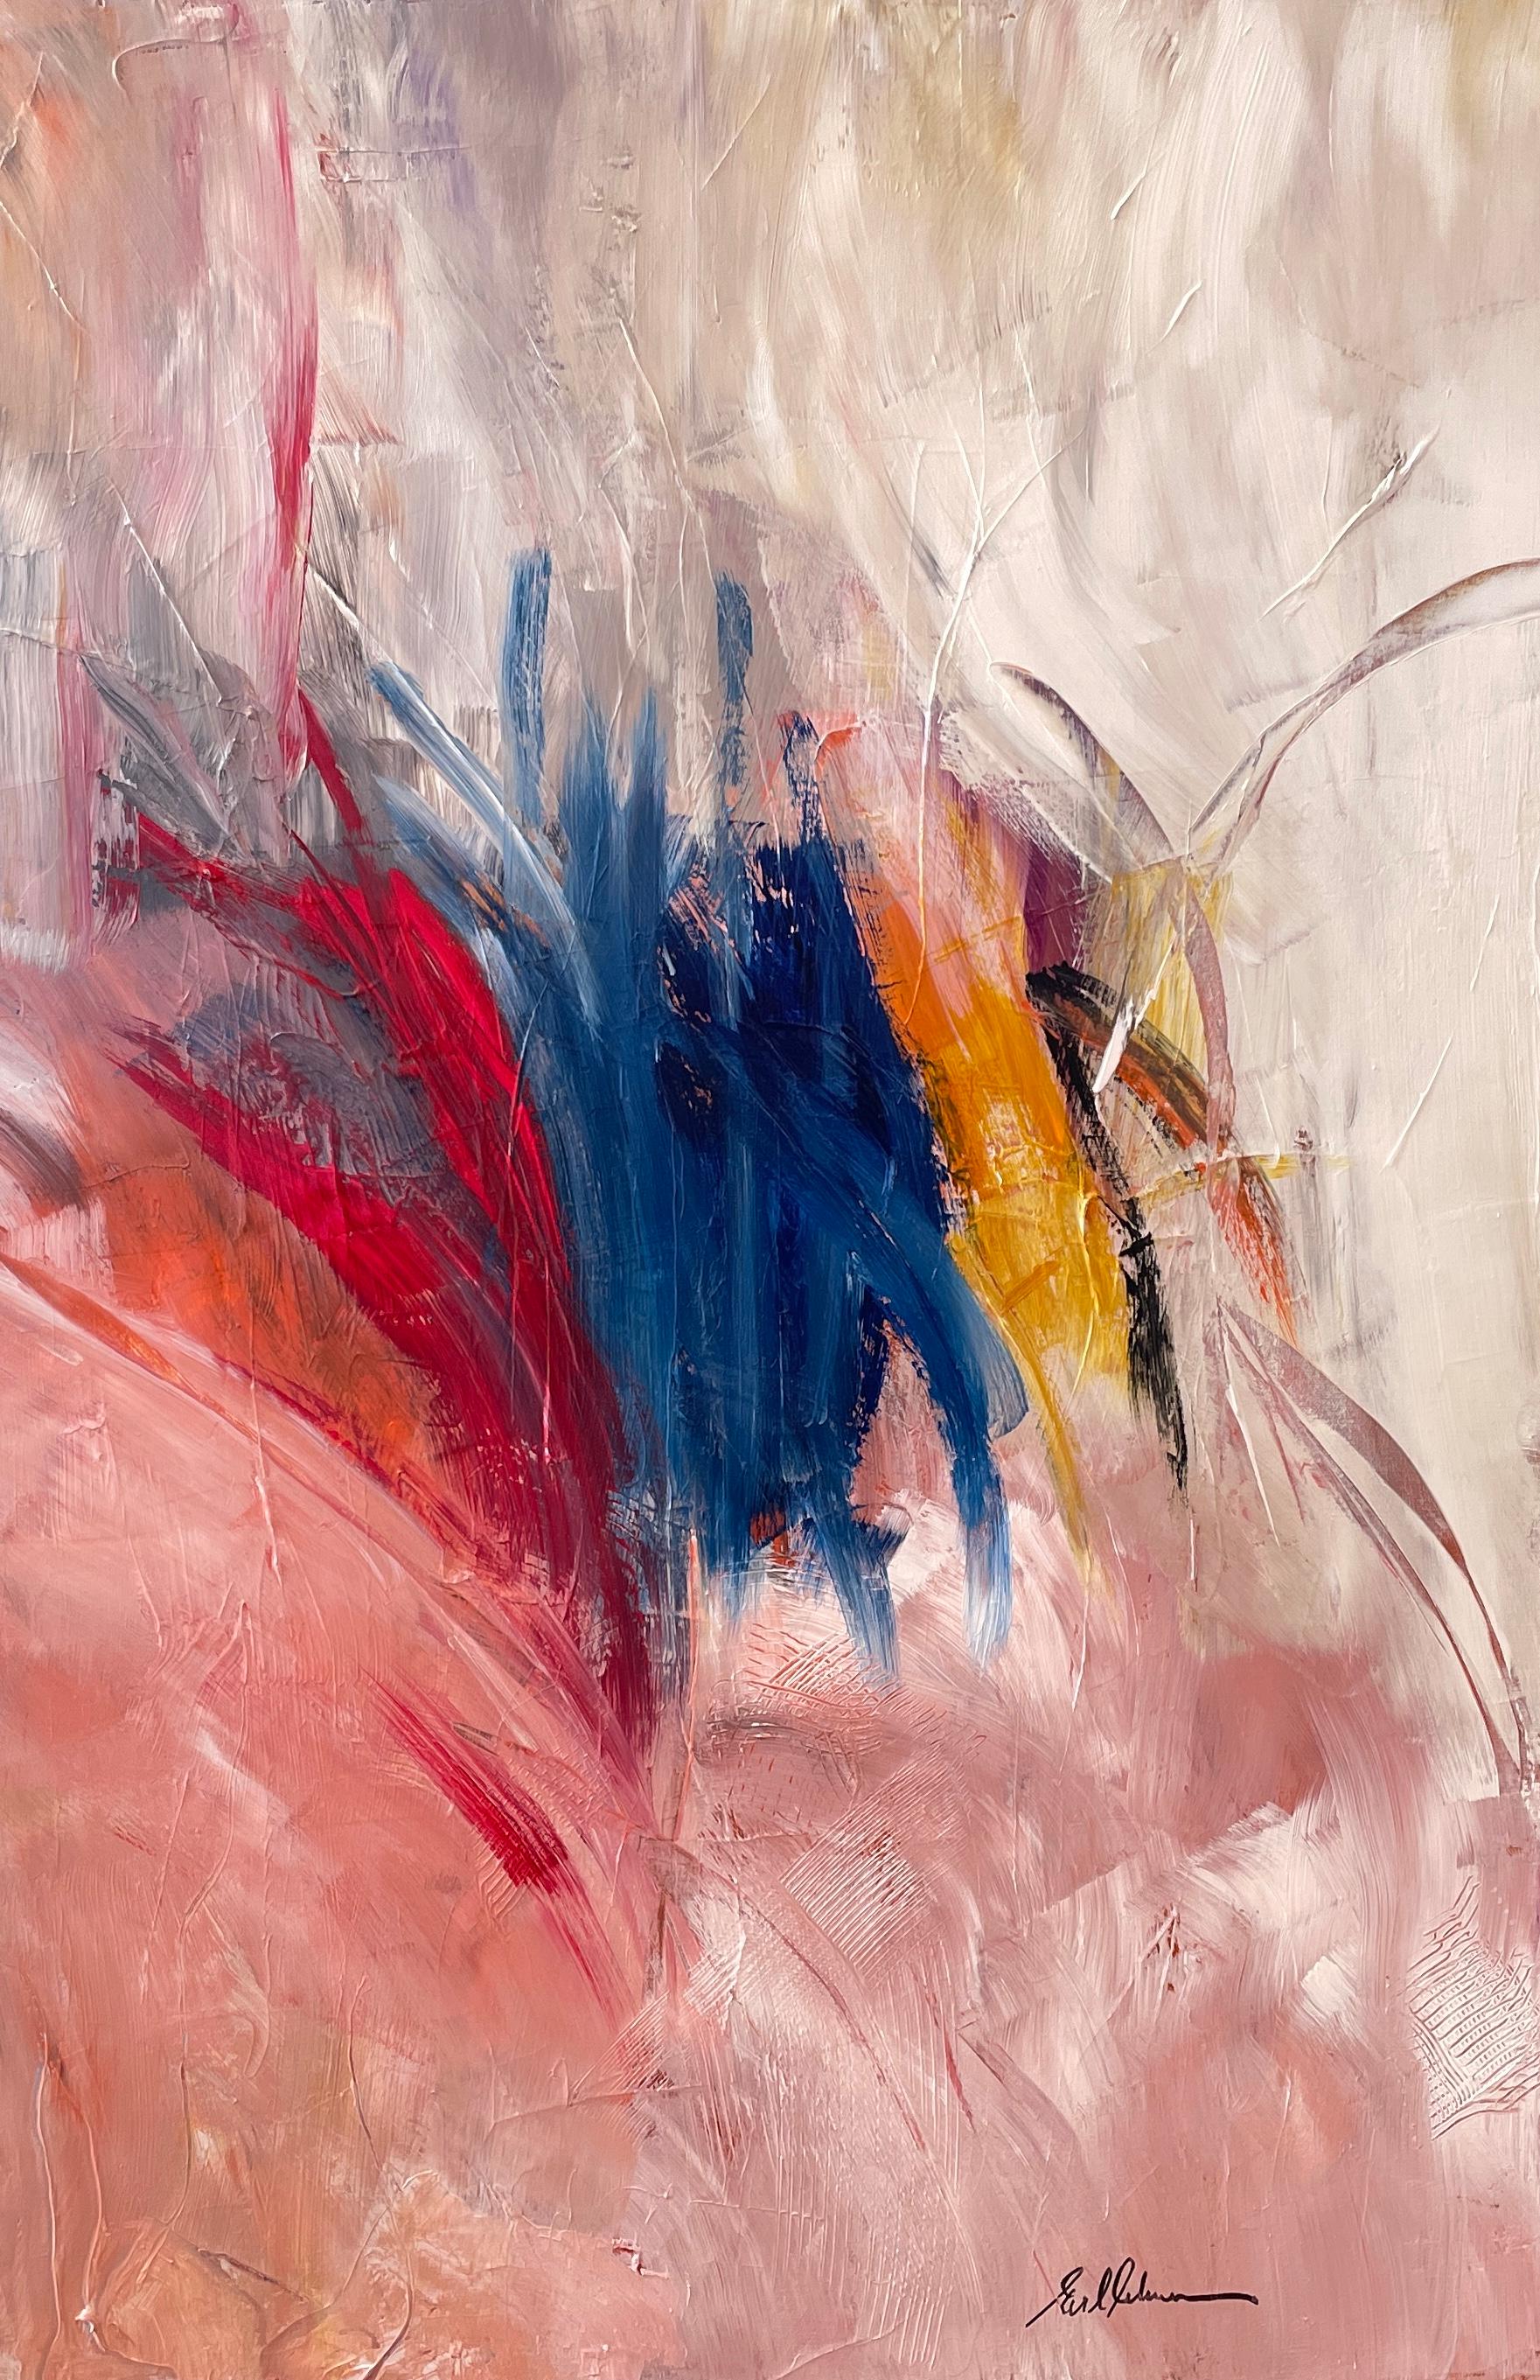 "Dreaming of Spring" Expressionniste abstrait contemporain rouge, bleu et orange - Mixed Media Art de Gail Lehman